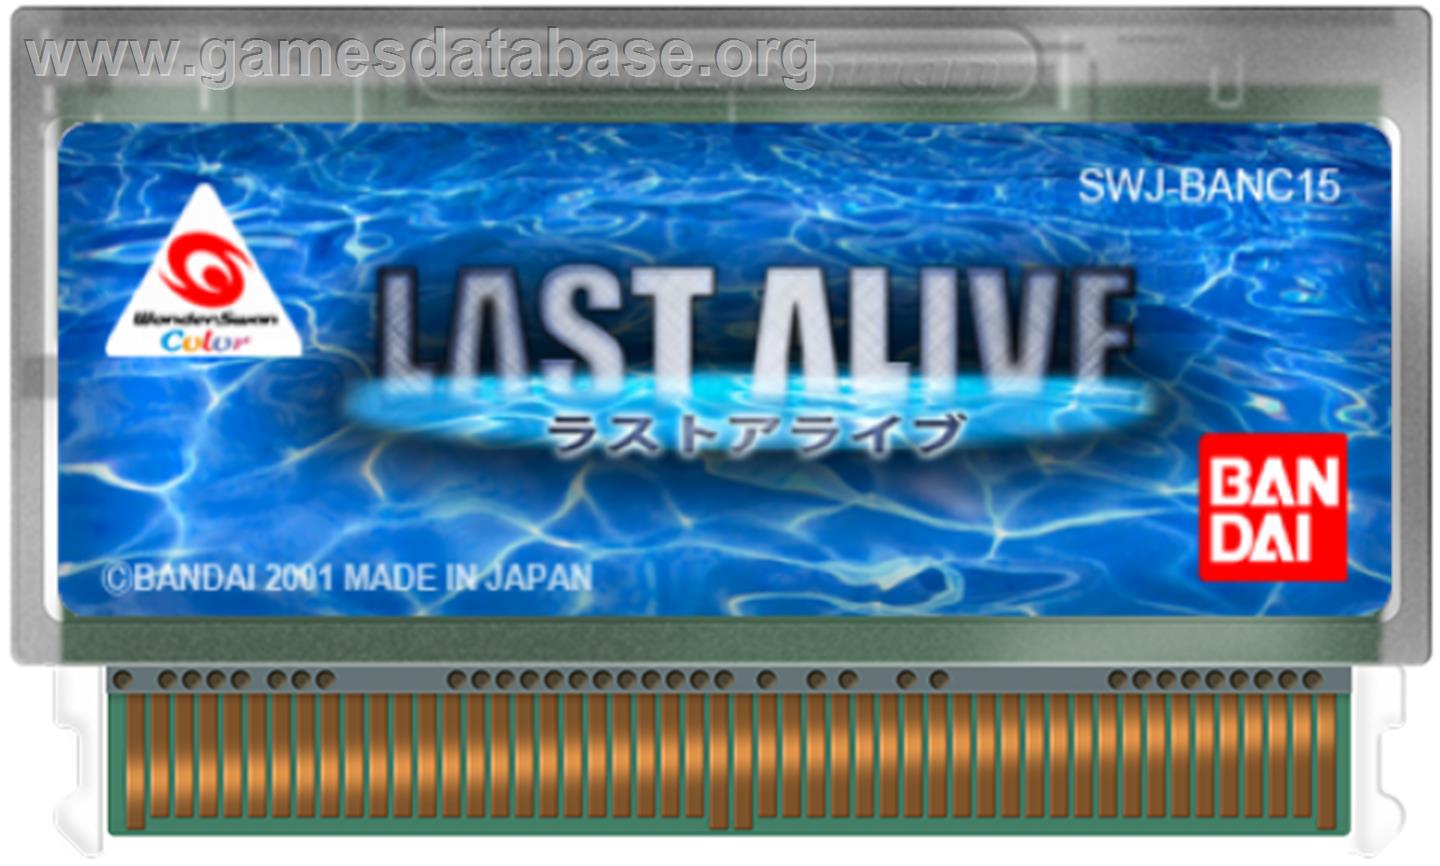 Last Alive - Bandai WonderSwan Color - Artwork - Cartridge